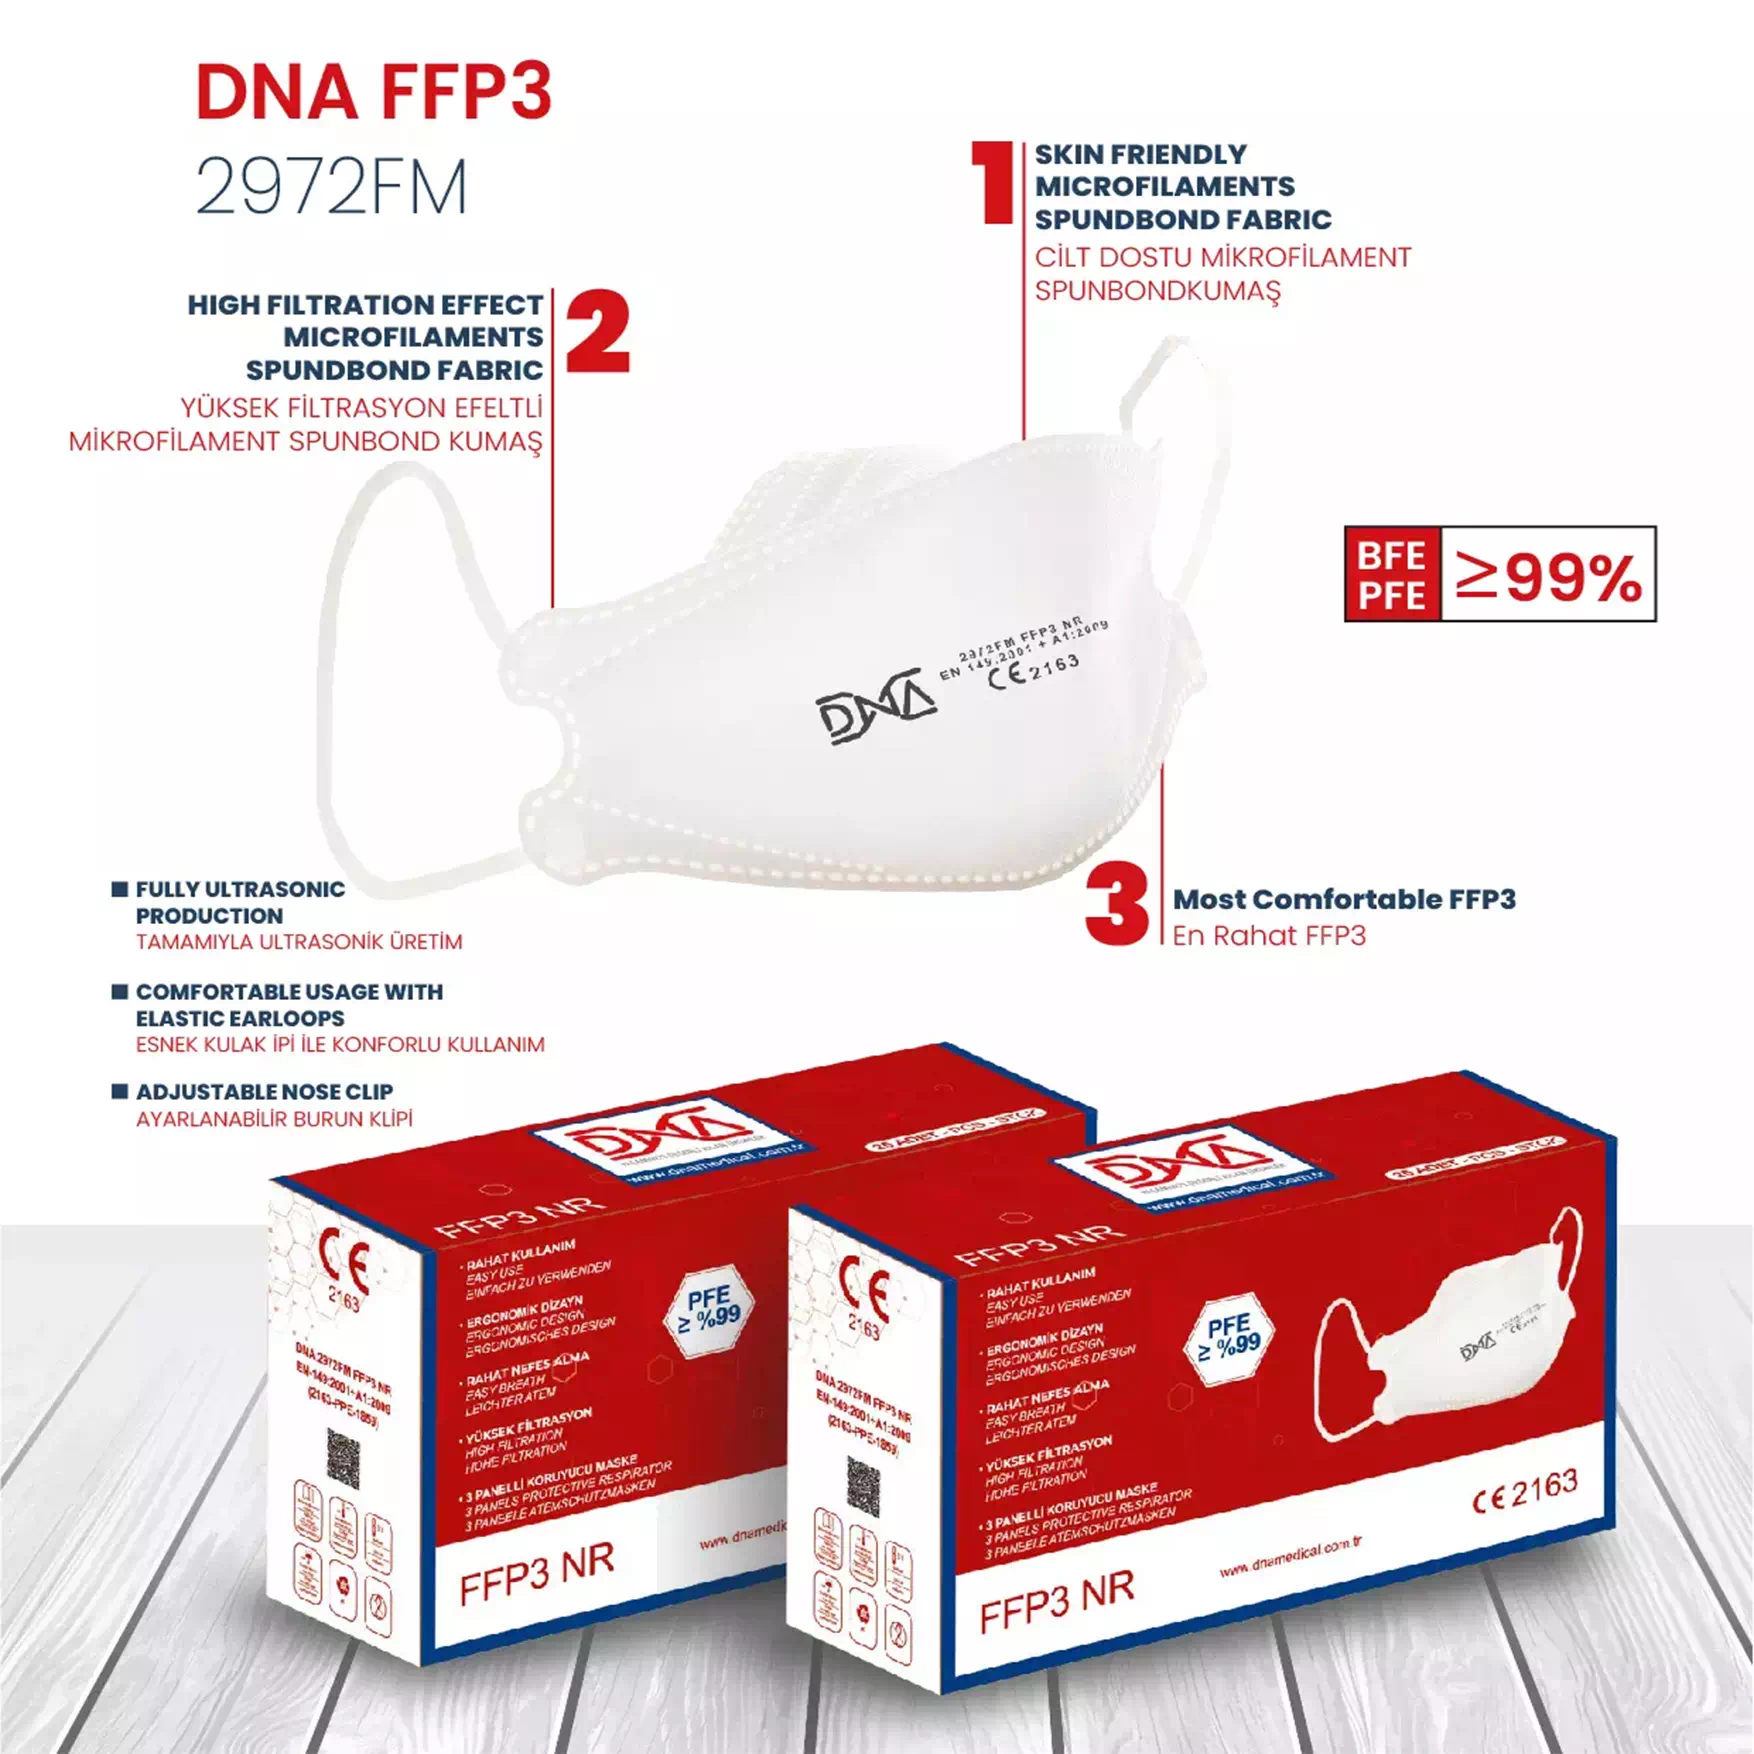 DNA-FFP3-2972FM